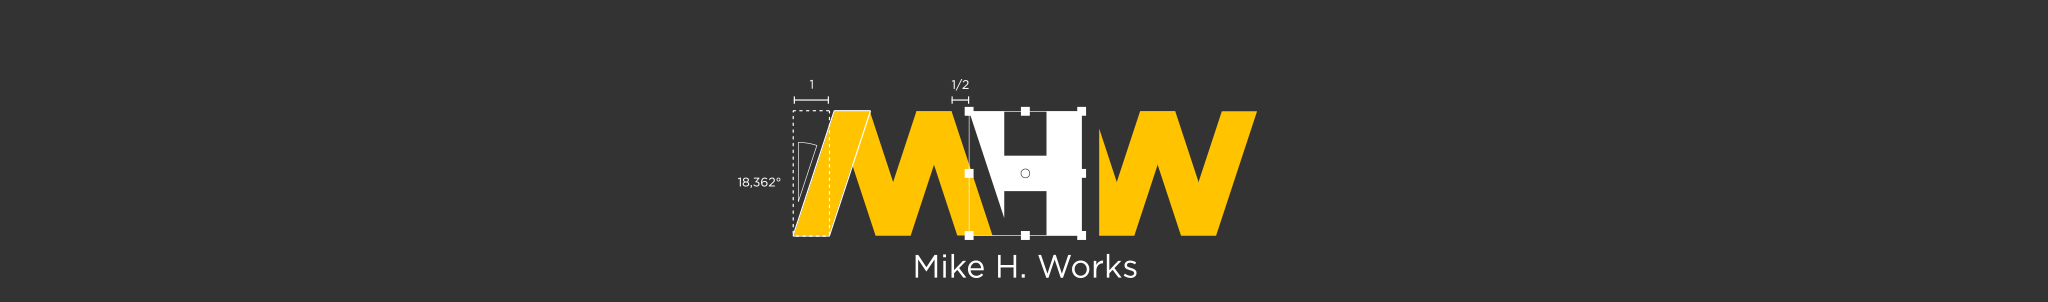 Profil-Banner von Mike H. Works